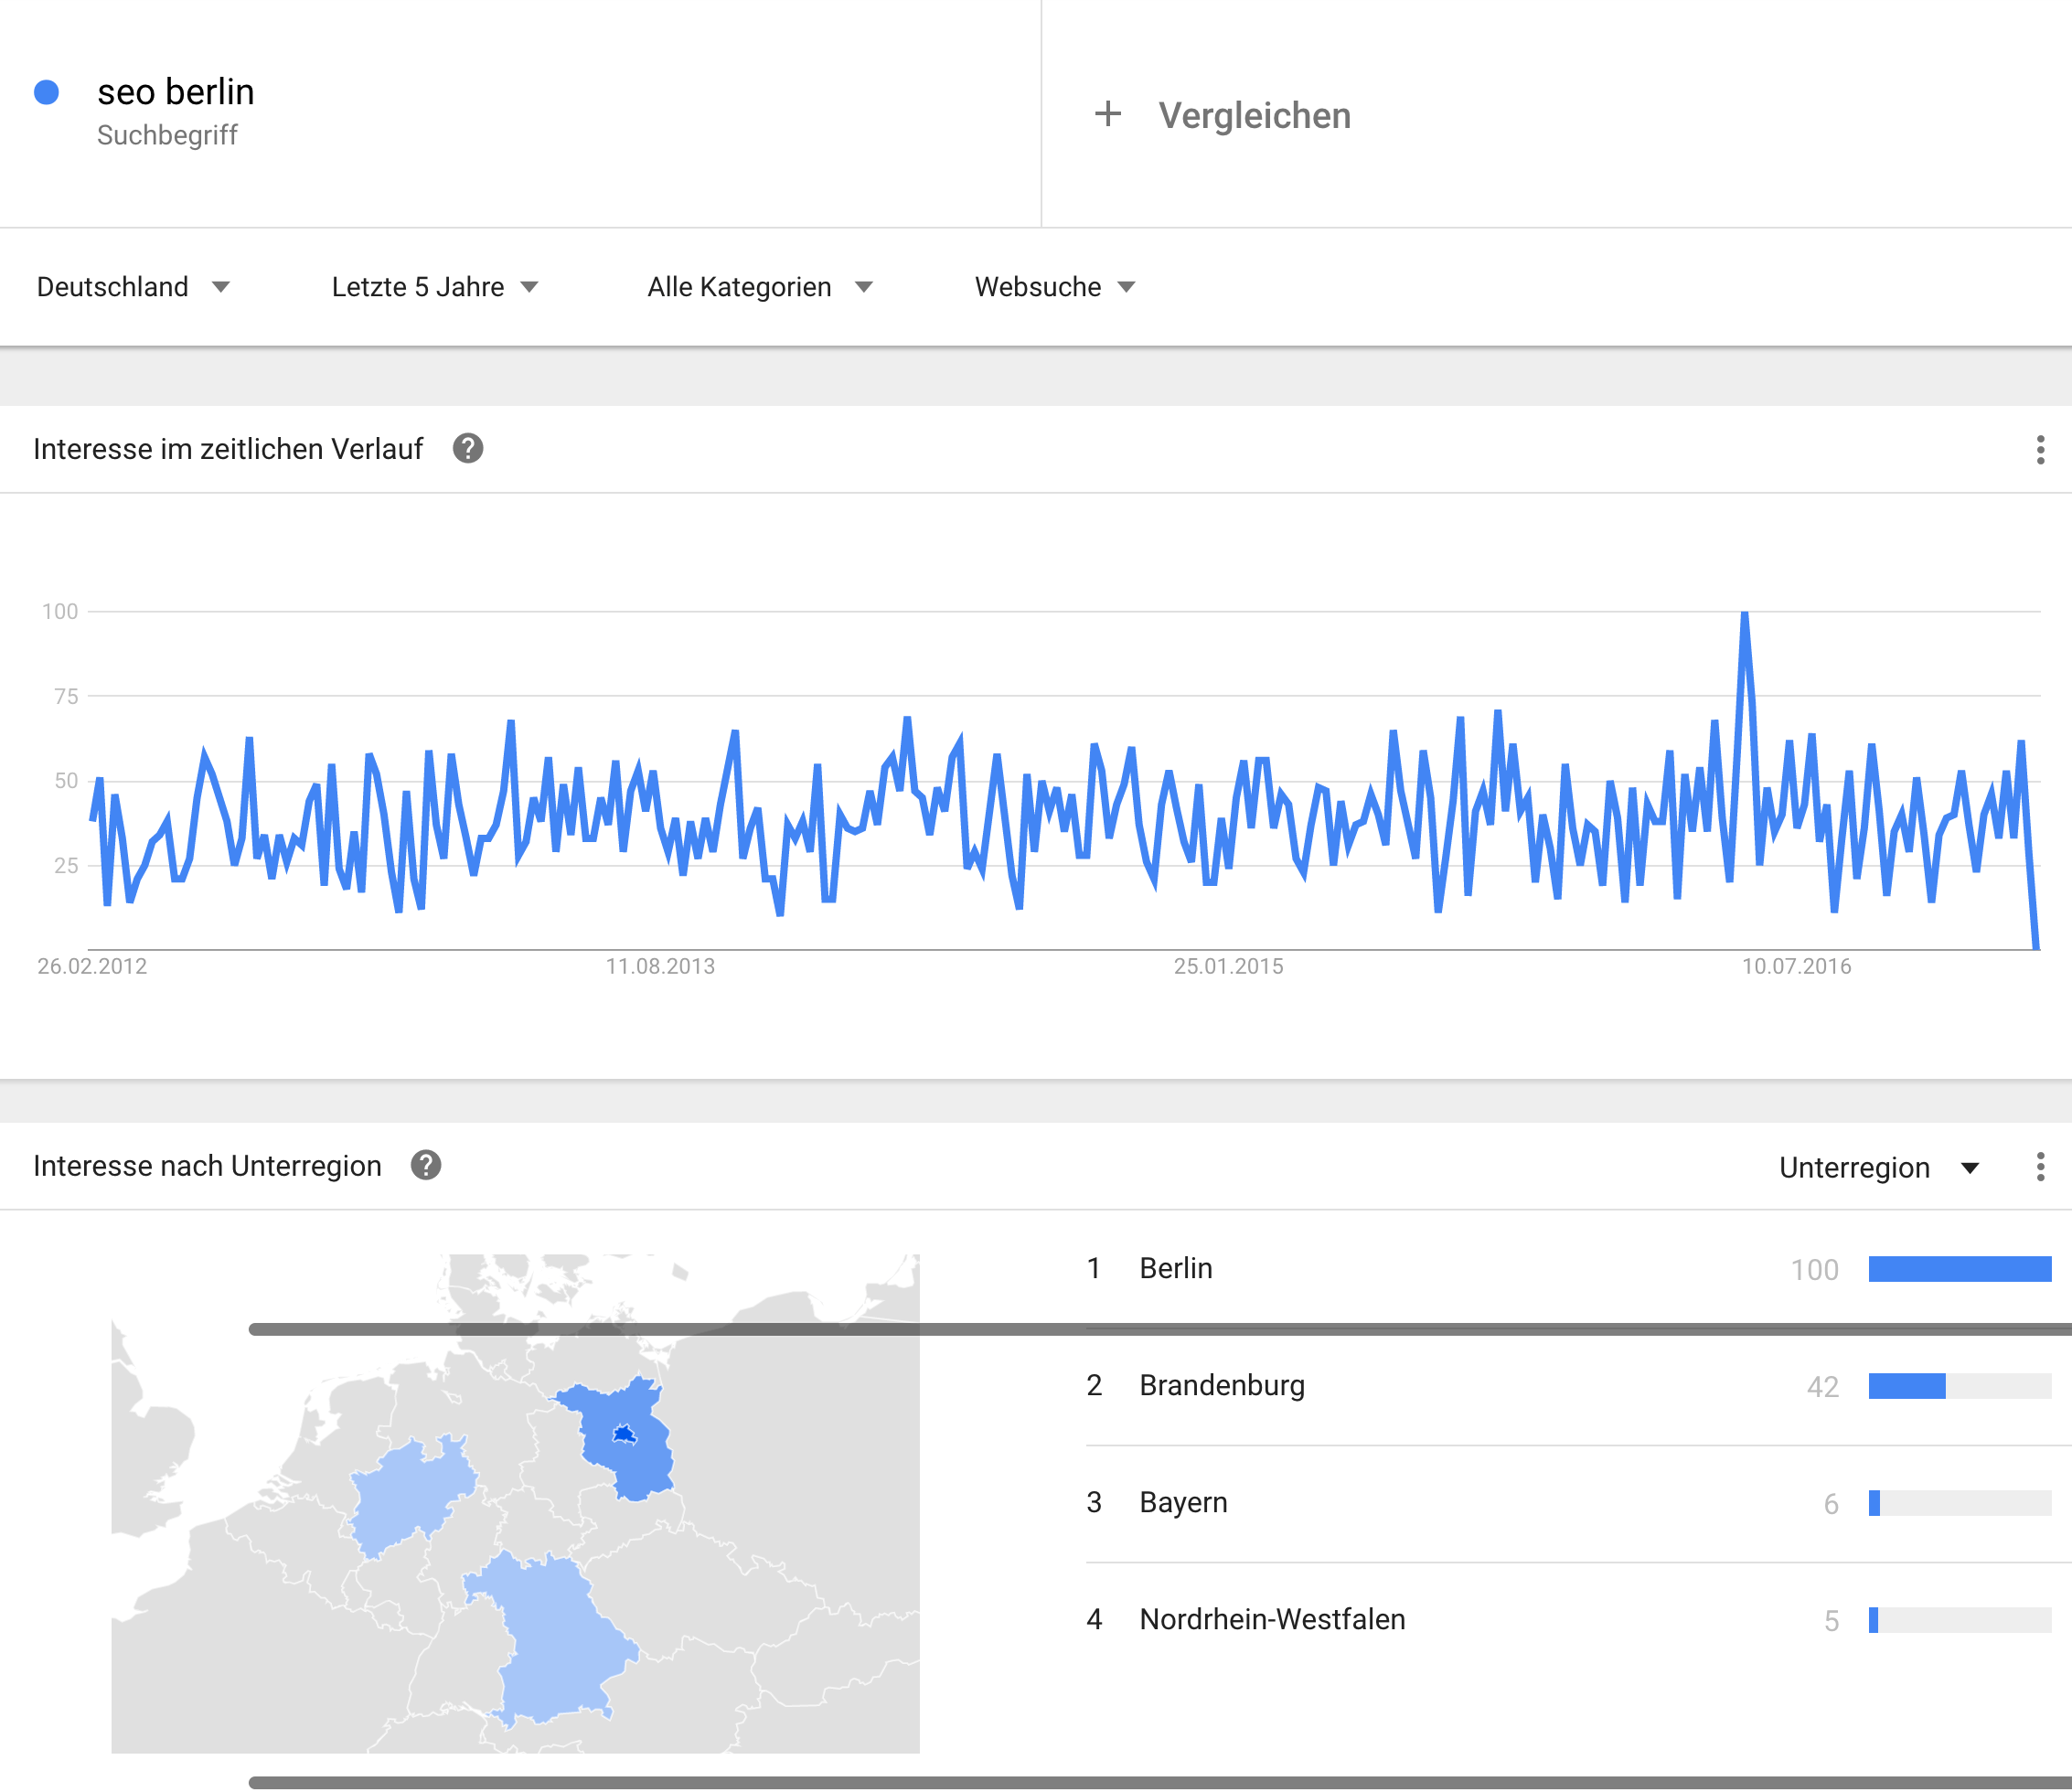 За последние пять лет, по данным Google Trends для SEO Berlin, наблюдается растущий интерес